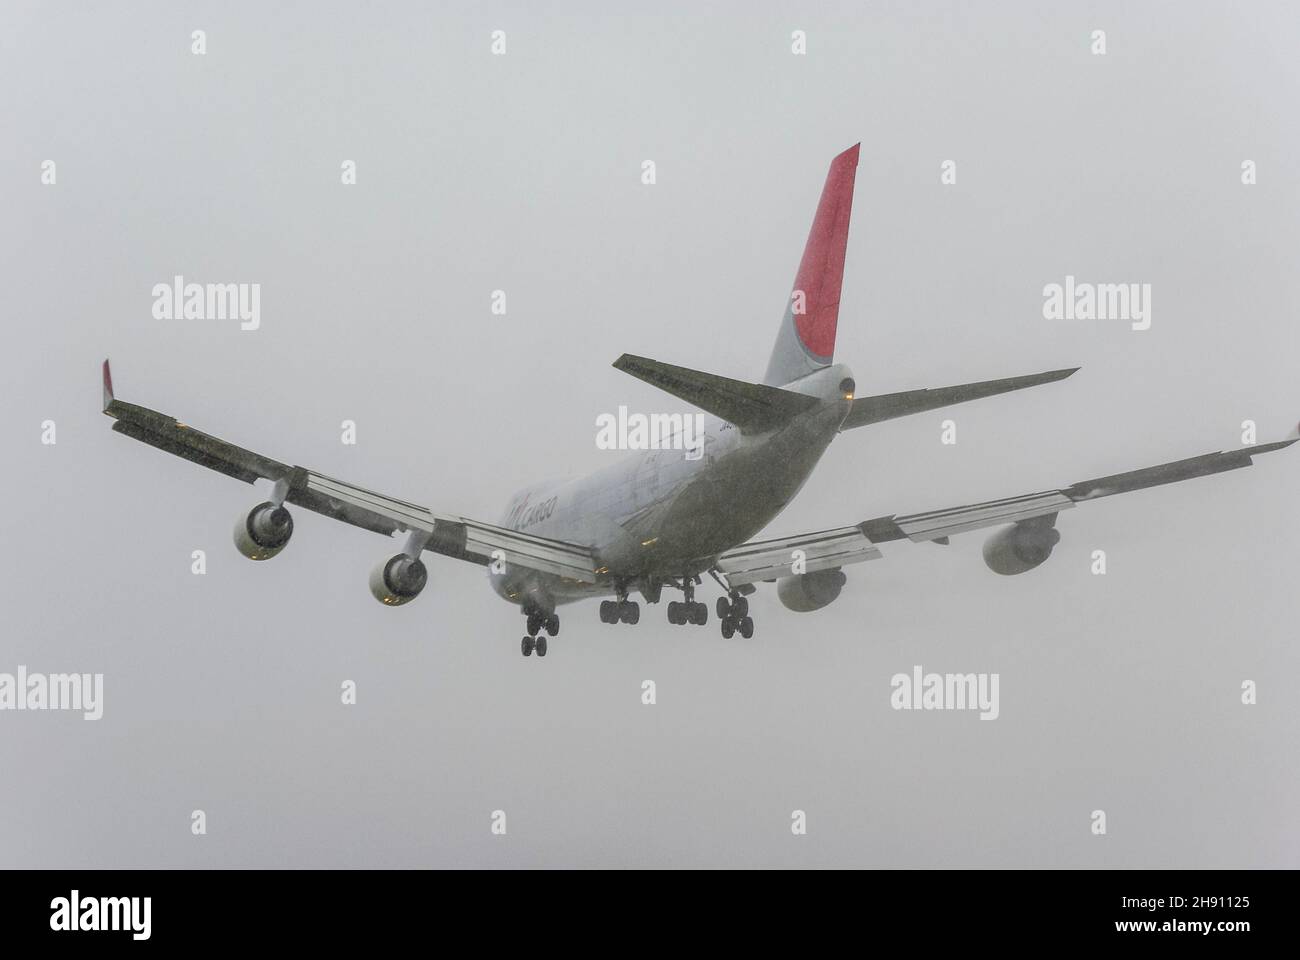 JAL Cargo Boeing 747 Jumbo Jet cargo avion JA401J atterrissage finales à l'aéroport de Londres Heathrow, Royaume-Uni, sous une pluie très forte.Vol par mauvais temps Banque D'Images